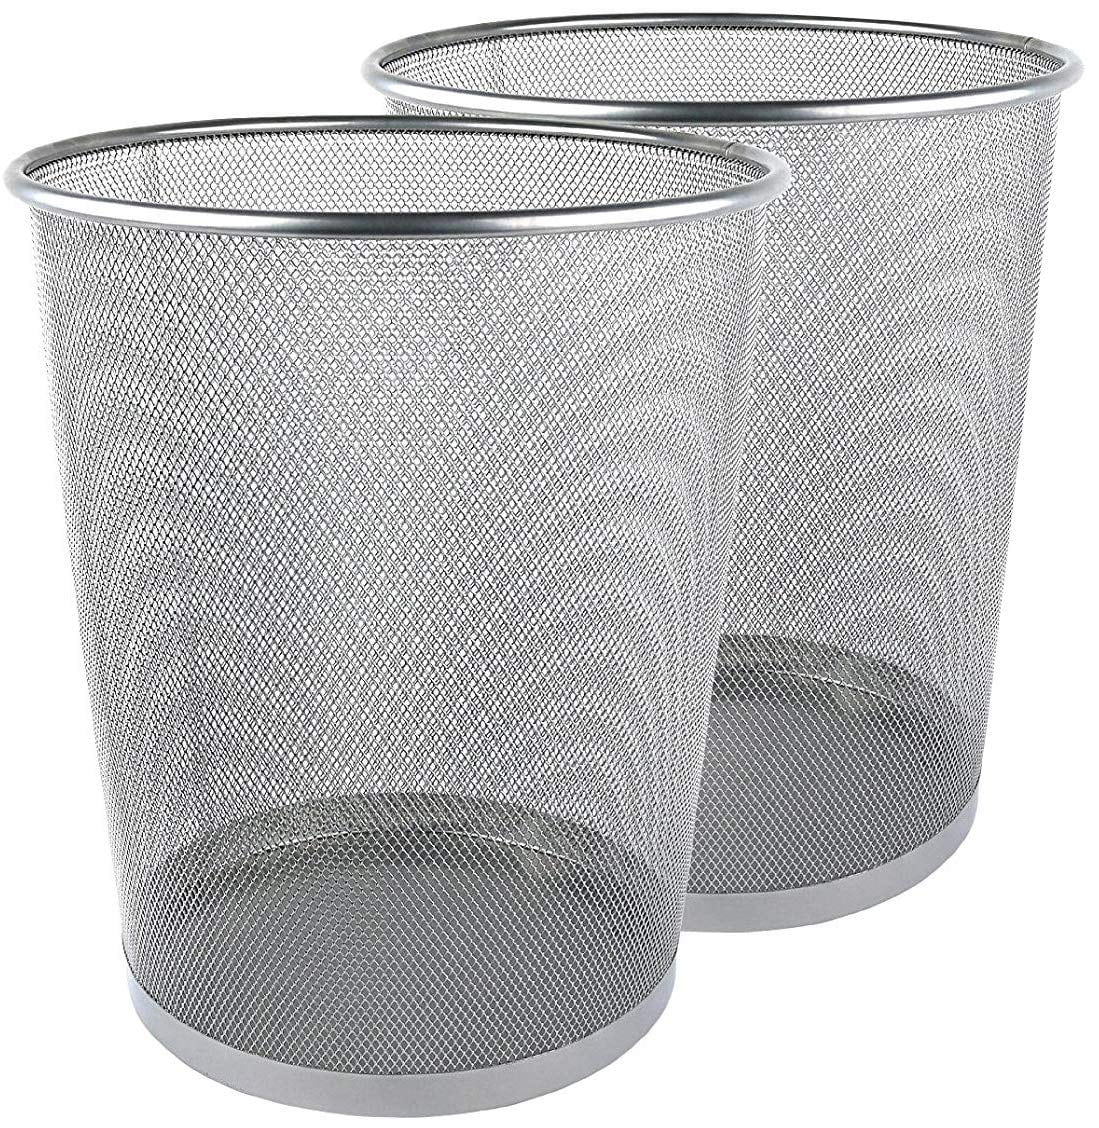 Circular Mesh Wastebasket Trash Can Waste Basket Garbage Can Bin for Bathrooms, 